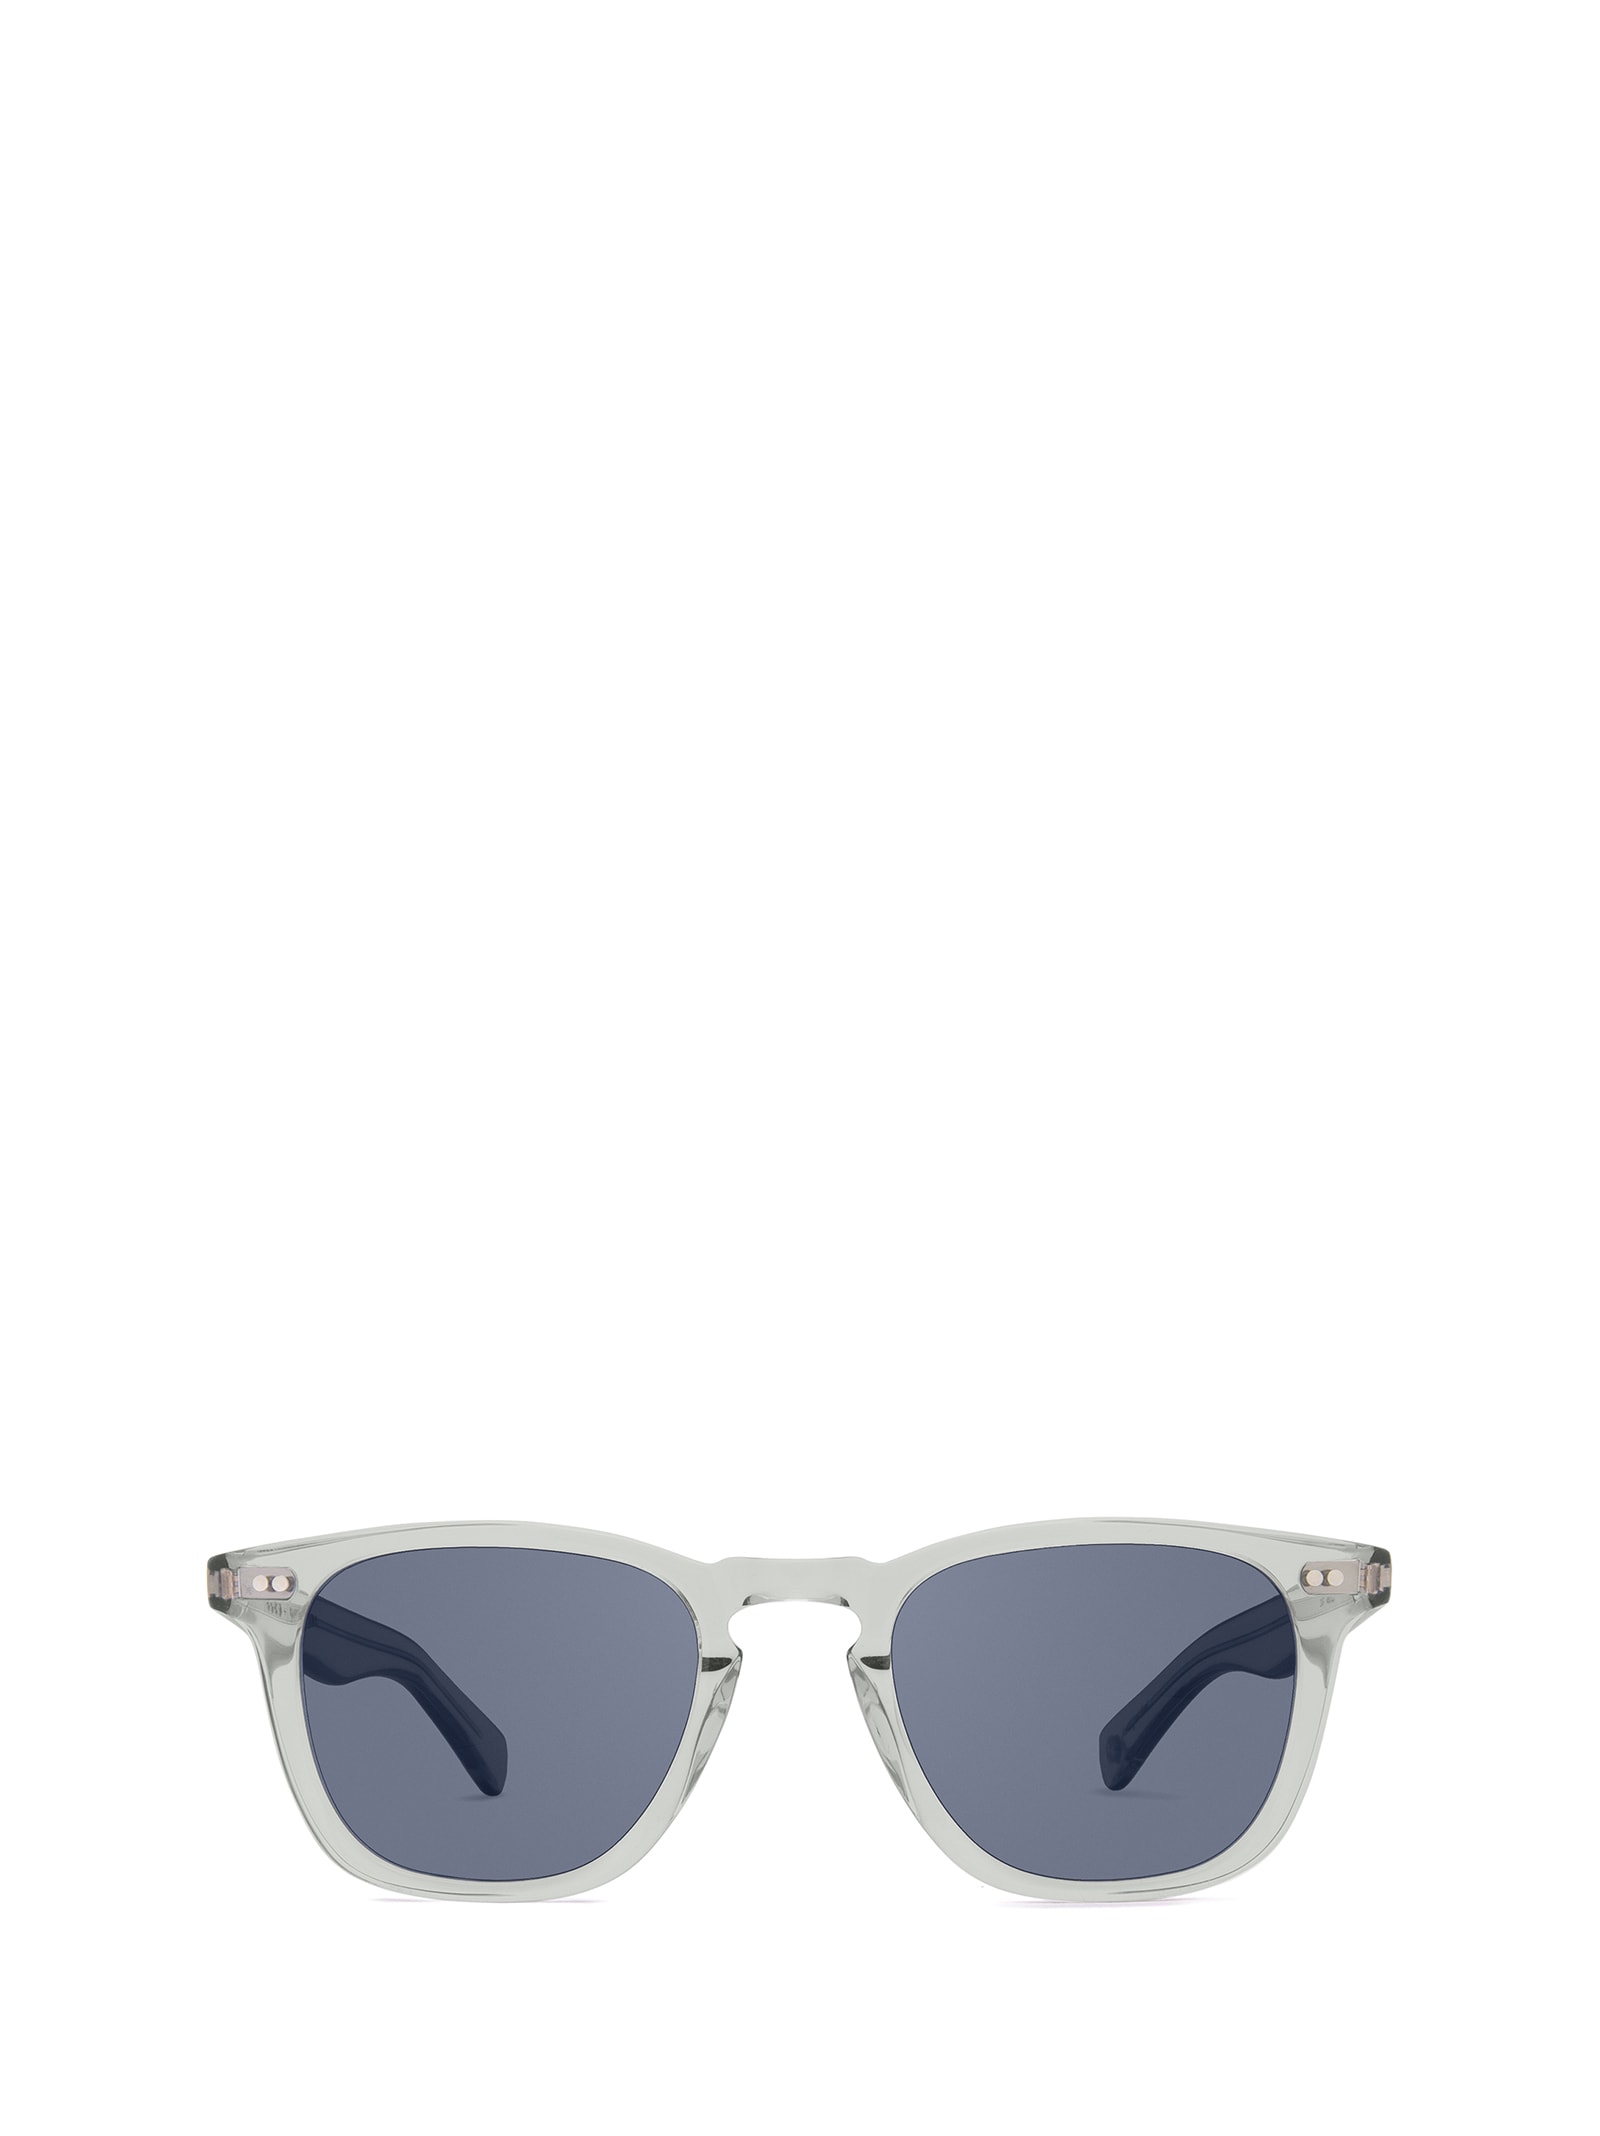 Shop Garrett Leight Glco X Jenni Kayne Sun Llg/blue Smoke Sunglasses